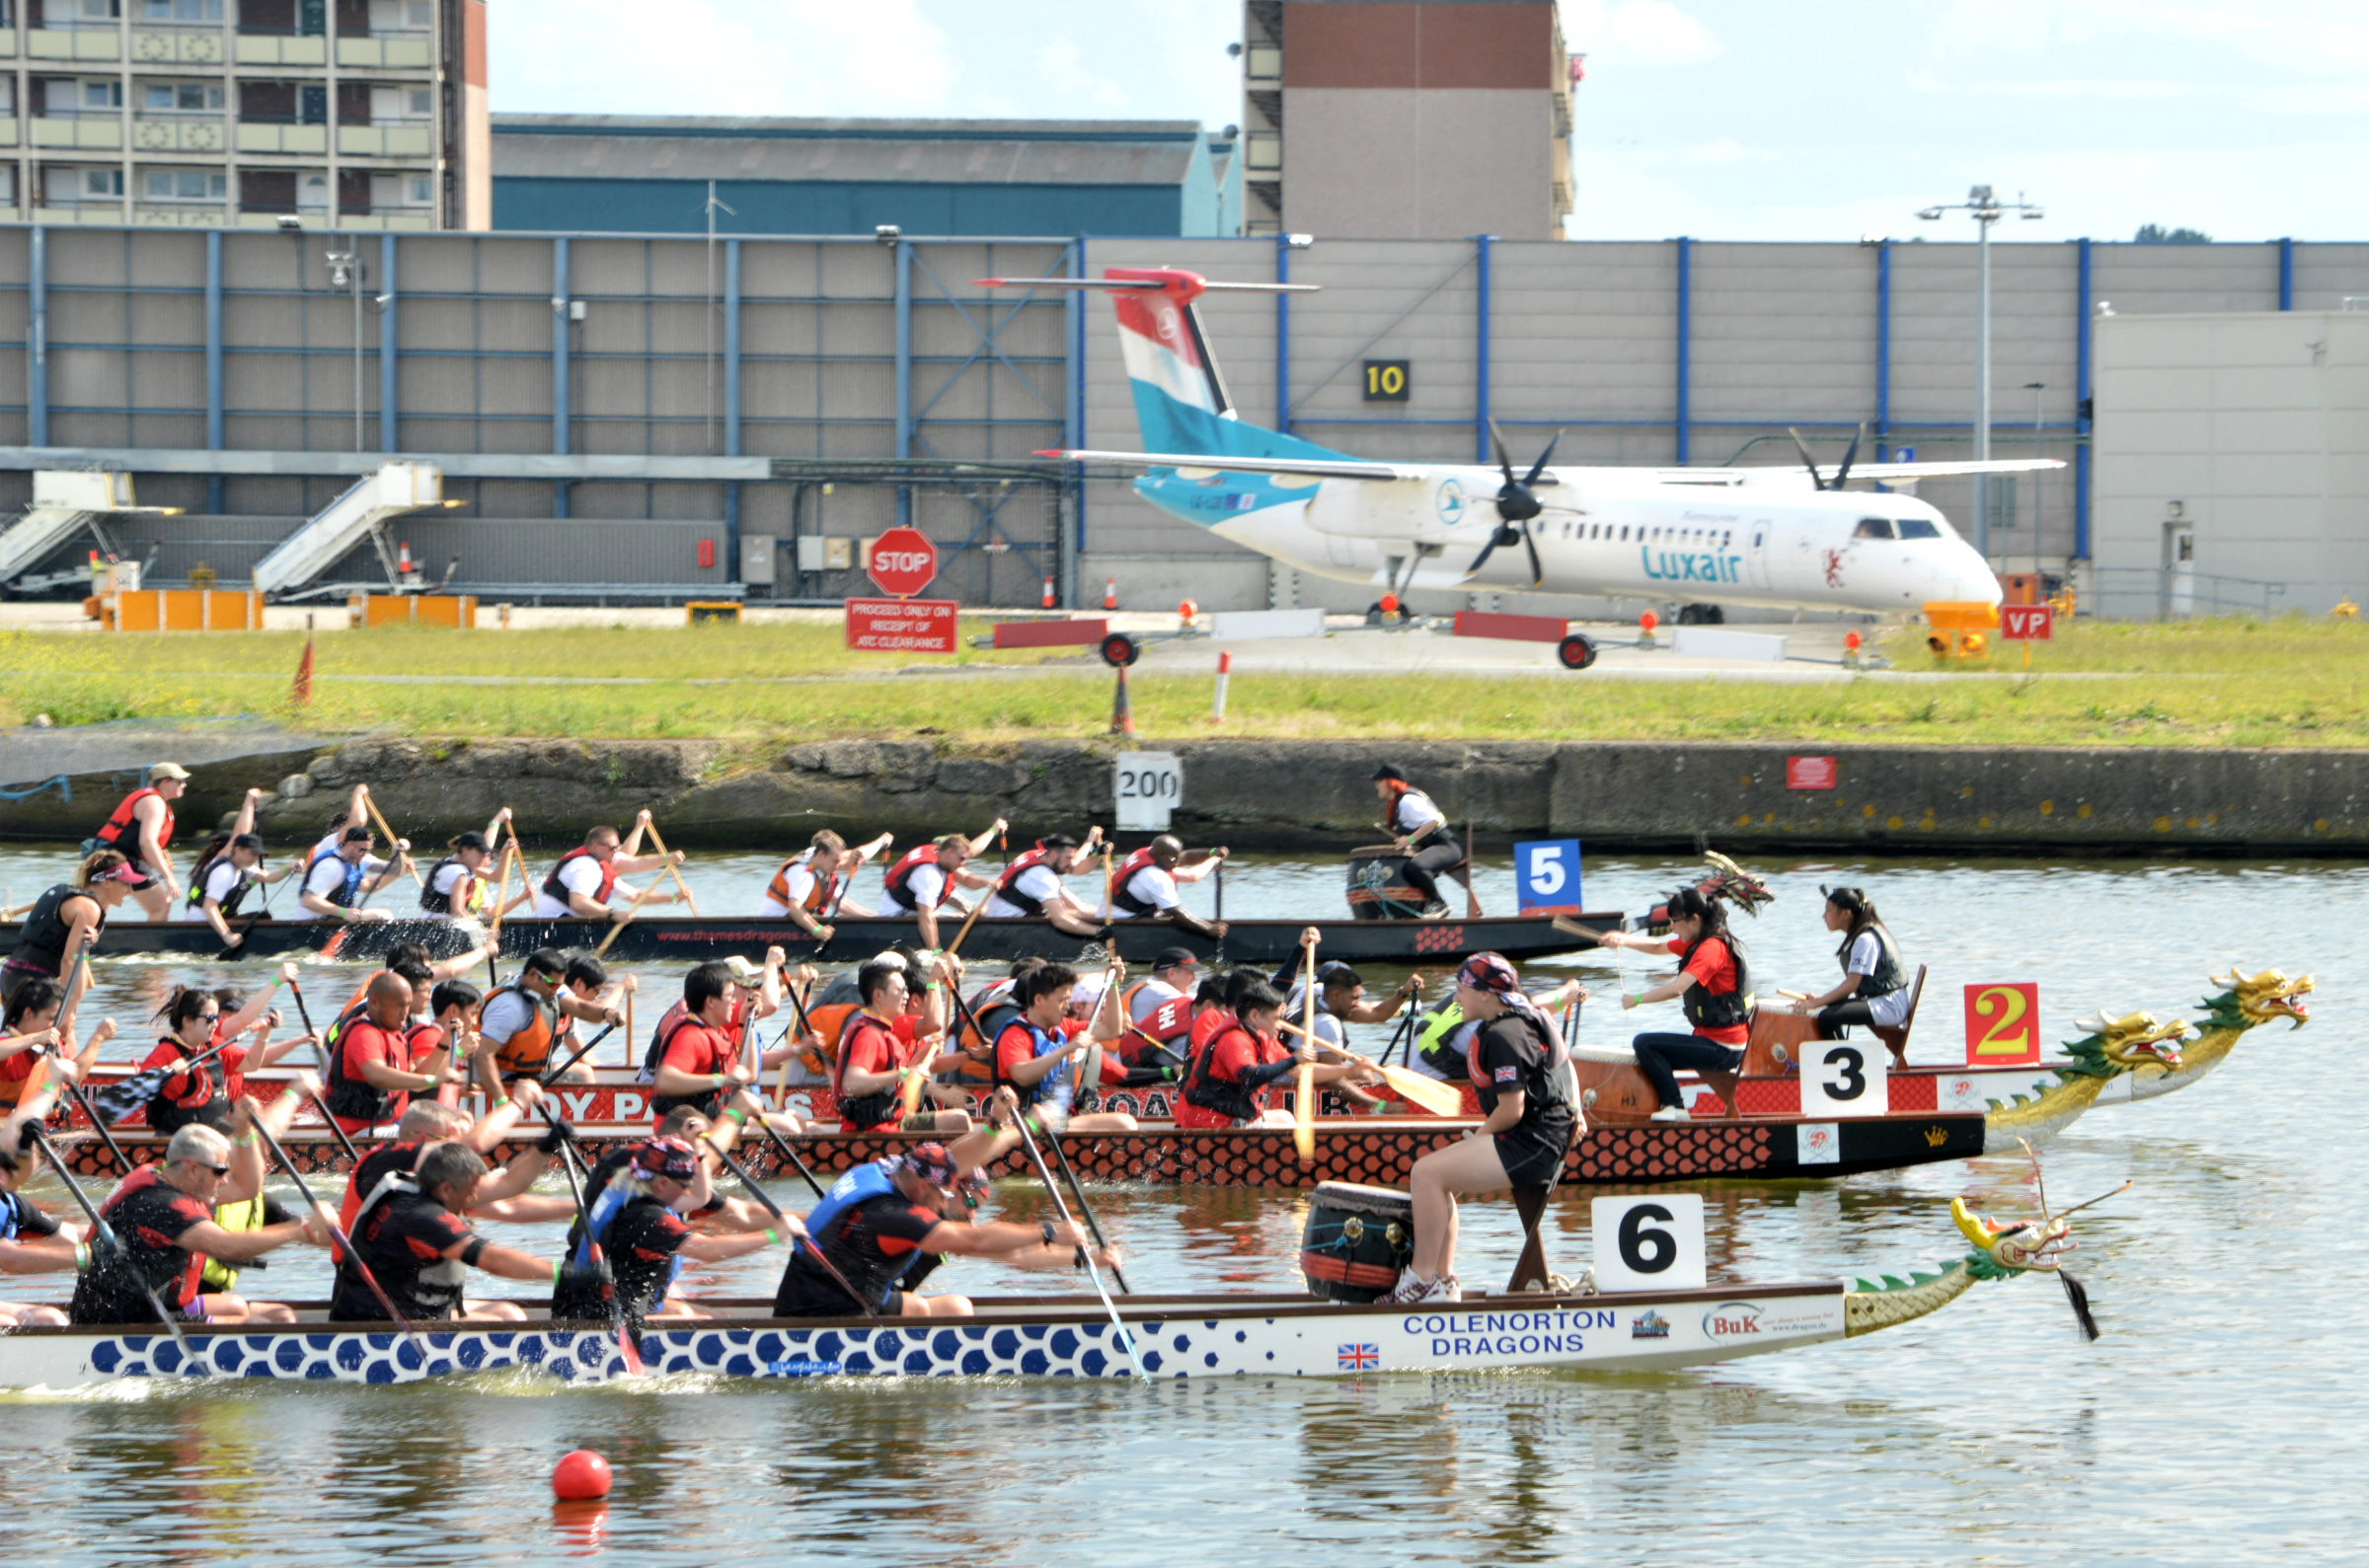 Three dragonboat teams racing at the Royal Docks